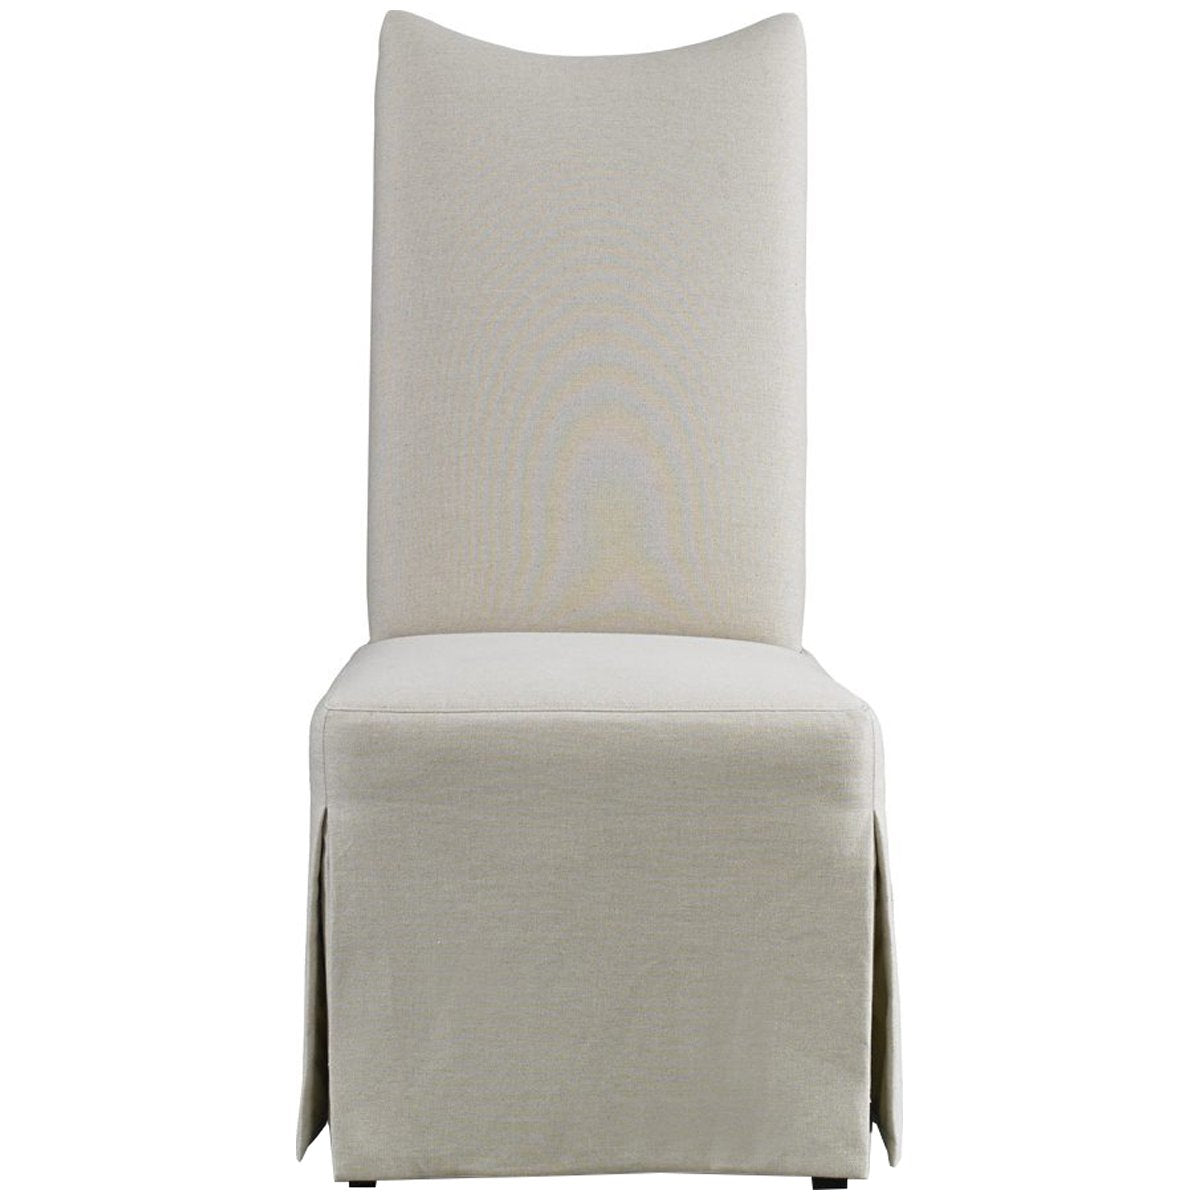 Hickory White Laurel Glynn Linen White Chair